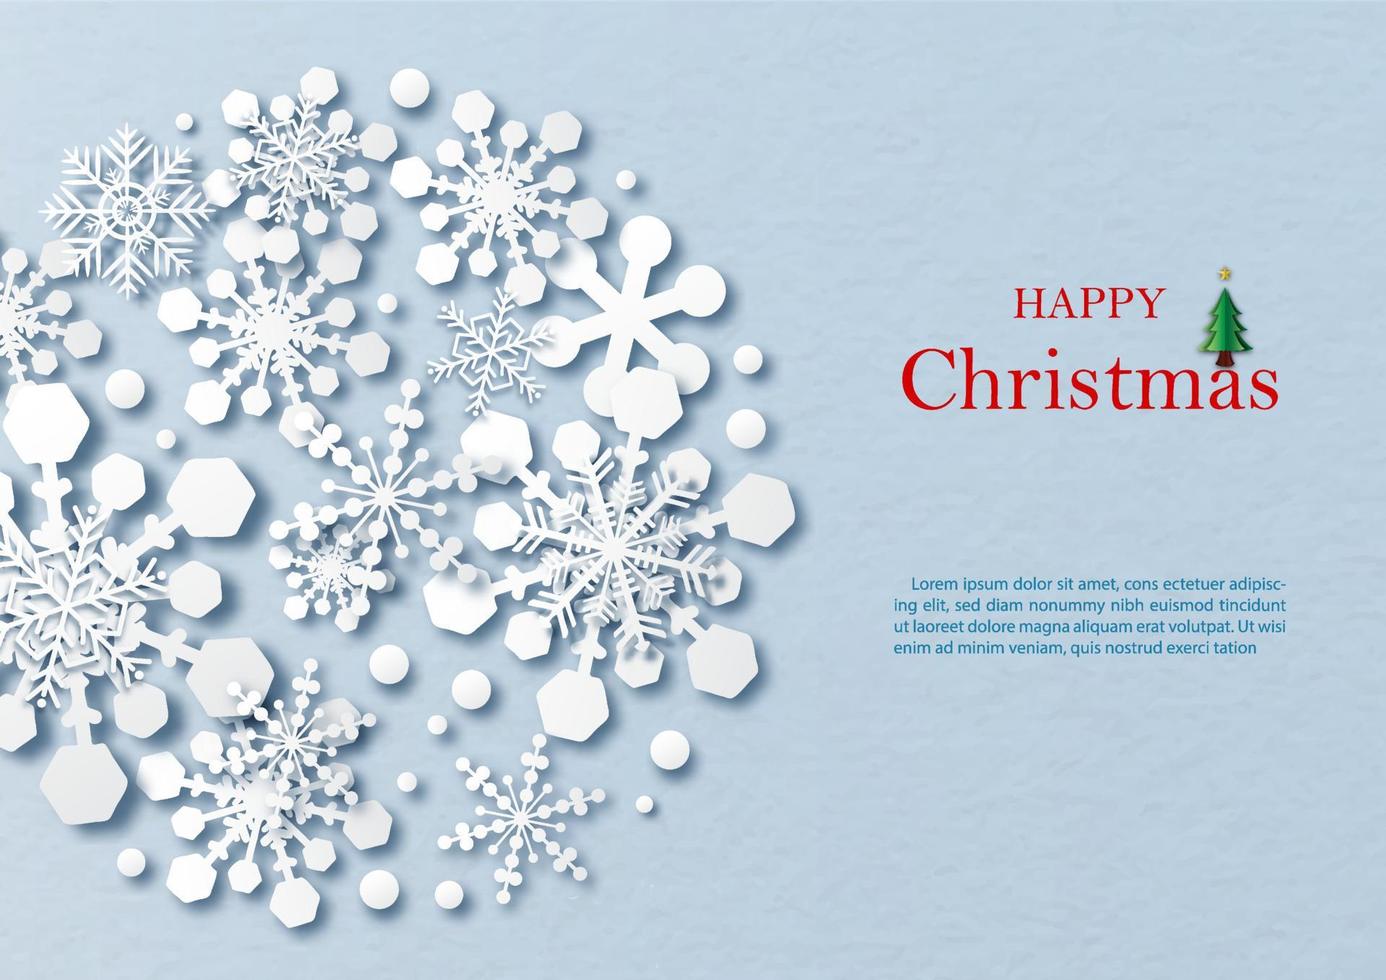 silhouette schneeflockenmuster in einer riesigen kreisform und papierschnittart mit wortlaut des weihnachtstages, beispieltexte auf blauem papiermusterhintergrund. vektor